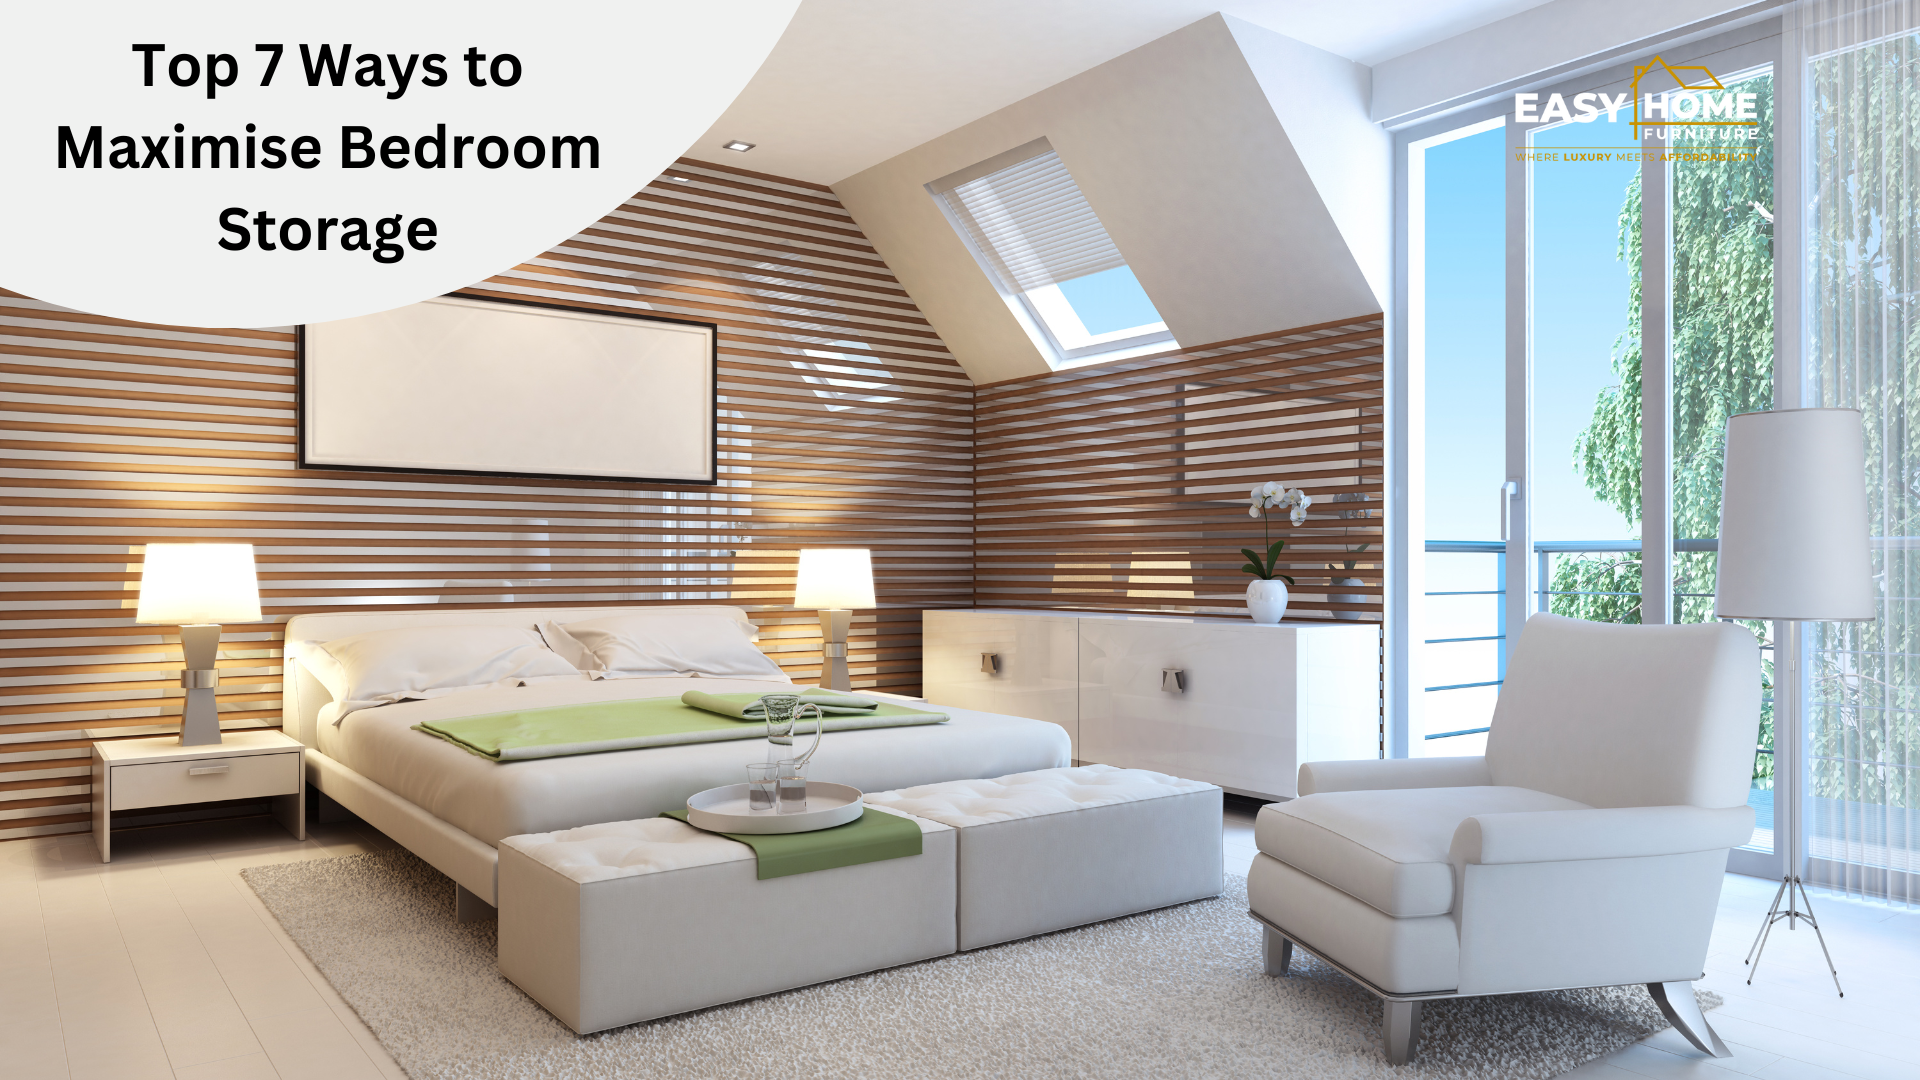 Top 7 Ways to Maximize Bedroom Storage